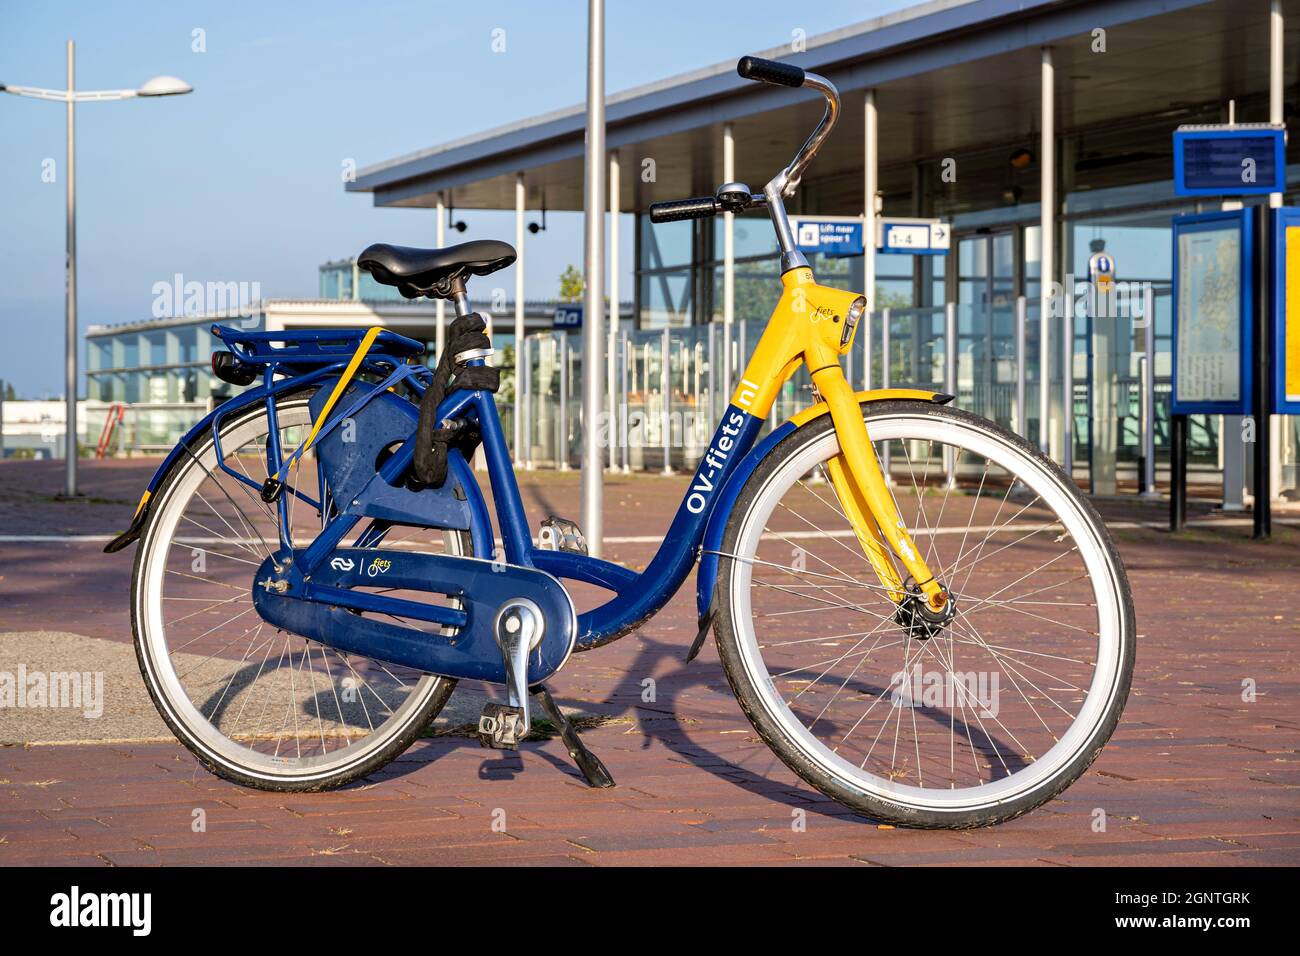 Post impressionisme Een trouwe Verwaand OV-fiets bike at Barendrecht station Stock Photo - Alamy